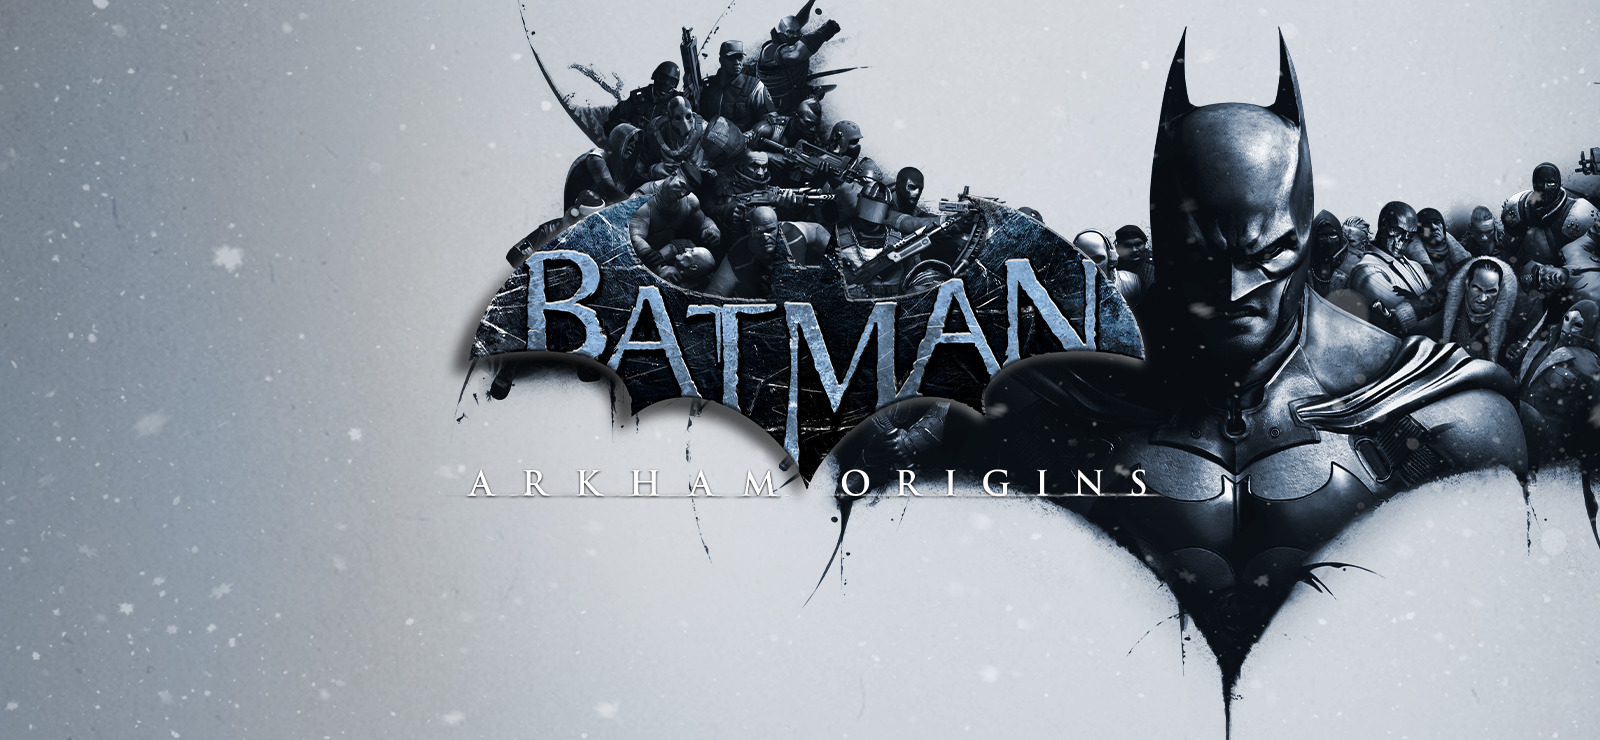 Arkham City / Batman Arkham City Goty Steam Key For Pc Buy Now